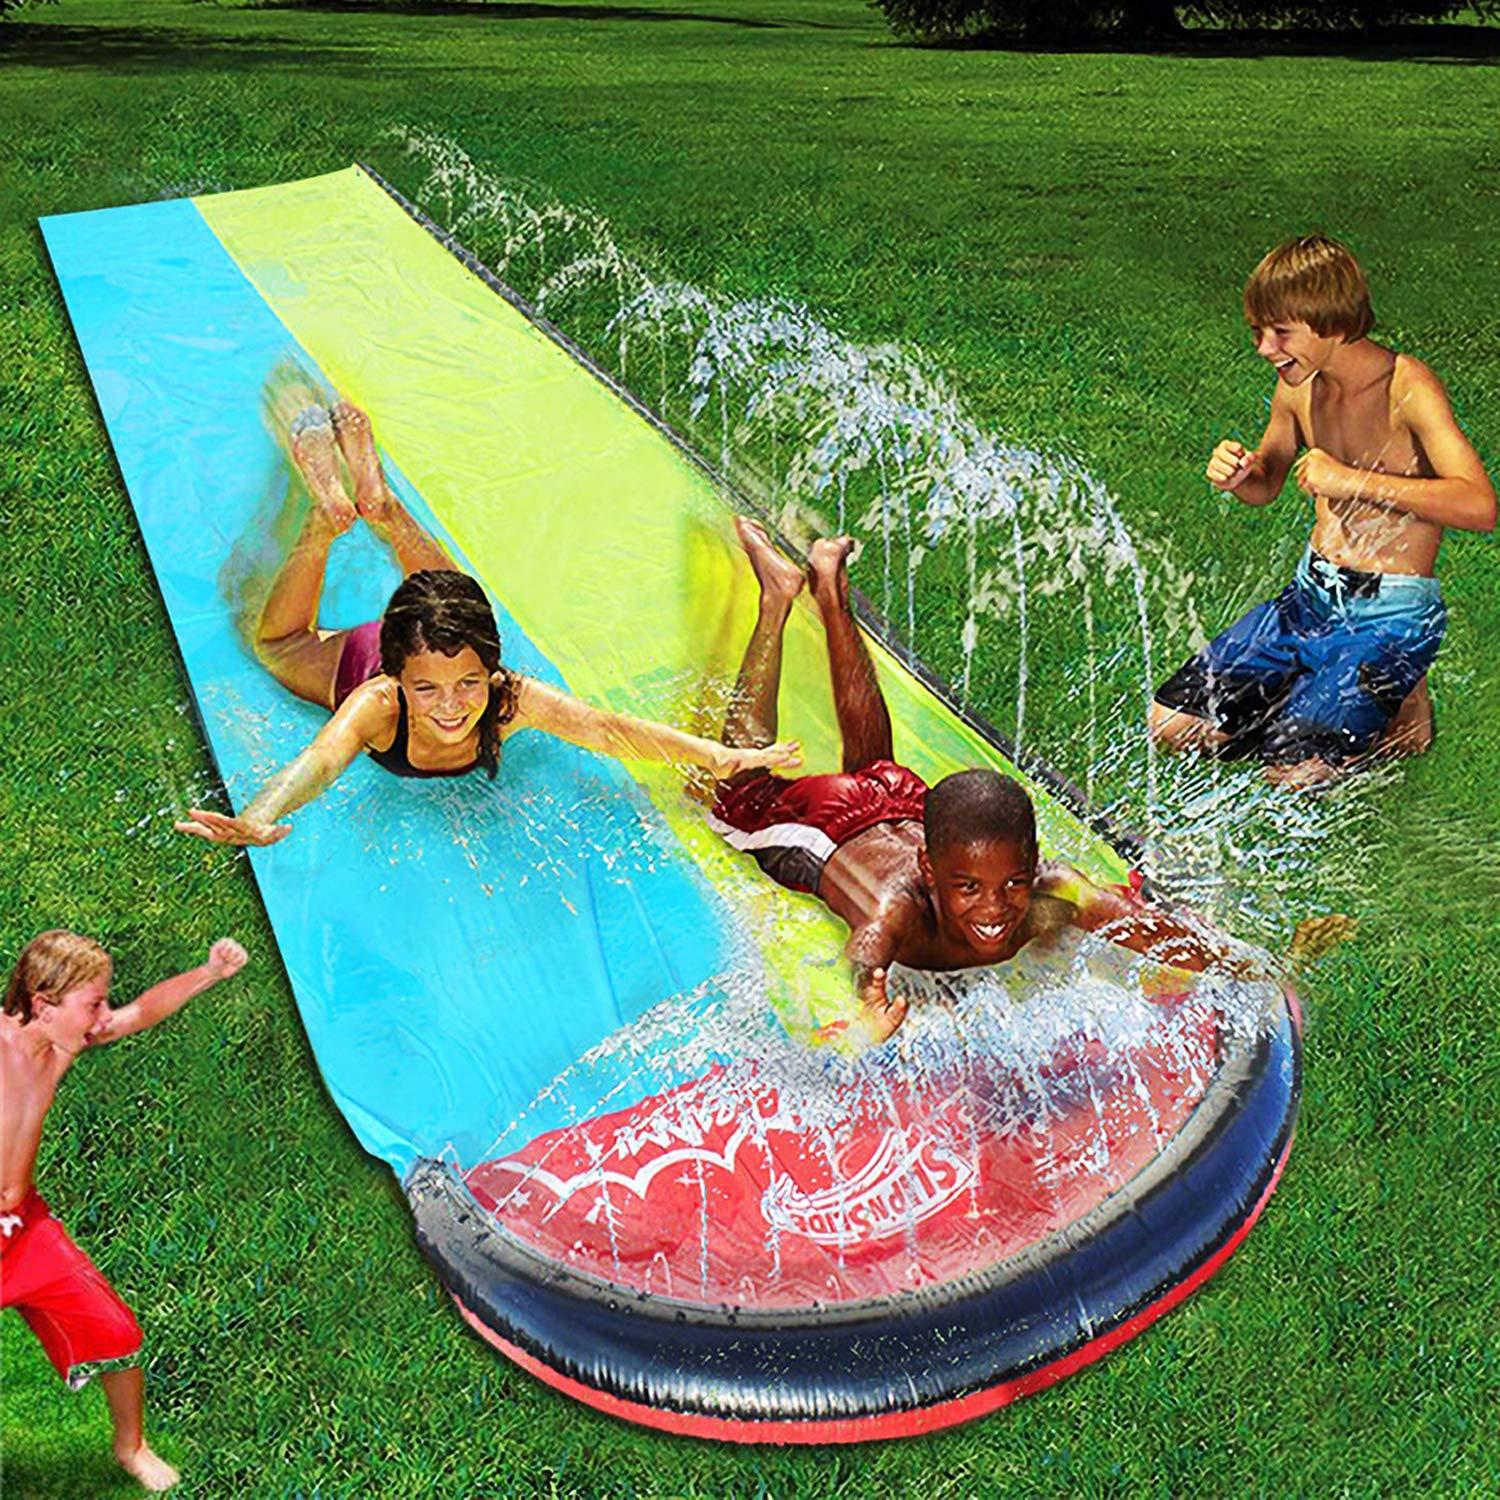 Thảm Trượt Công Viên Nước Tại Nhà Cho Bé Vui Chơi Double Slide Water Park Home (4,8 x 1,4m) - Skylife